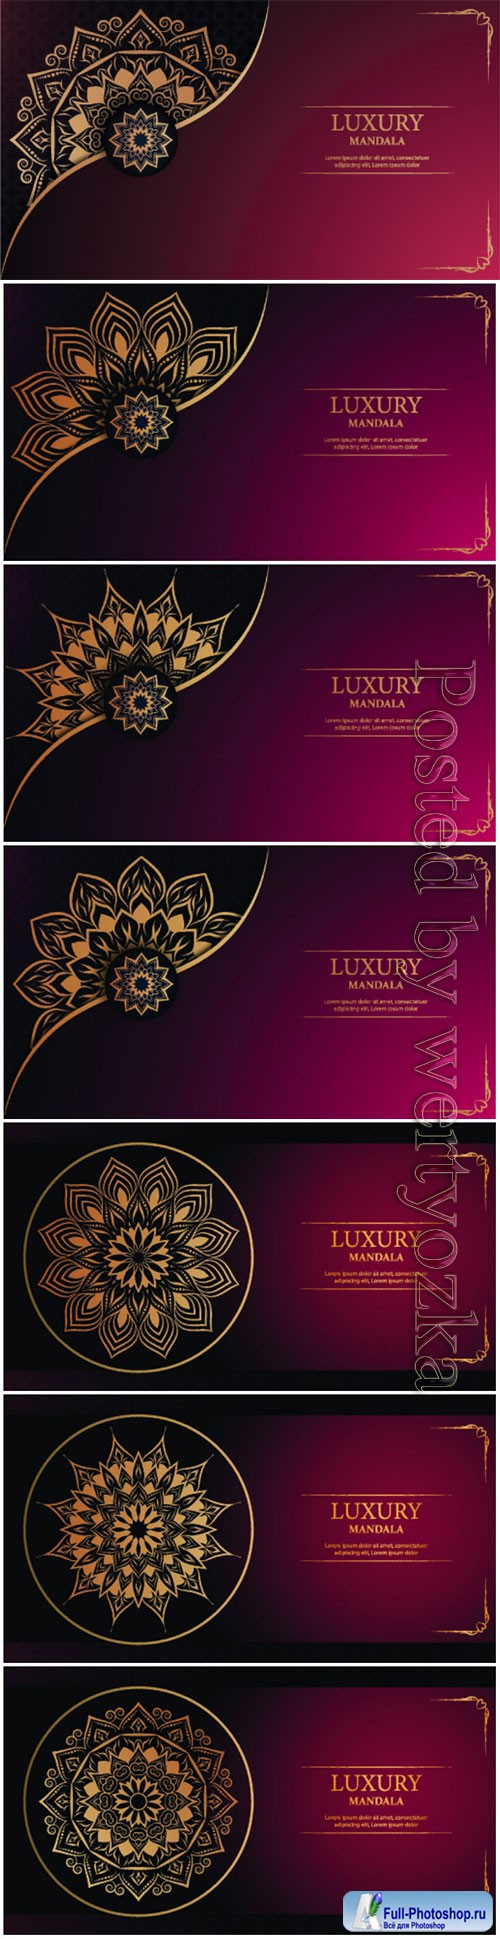 Luxury decorative mandala vector background # 2